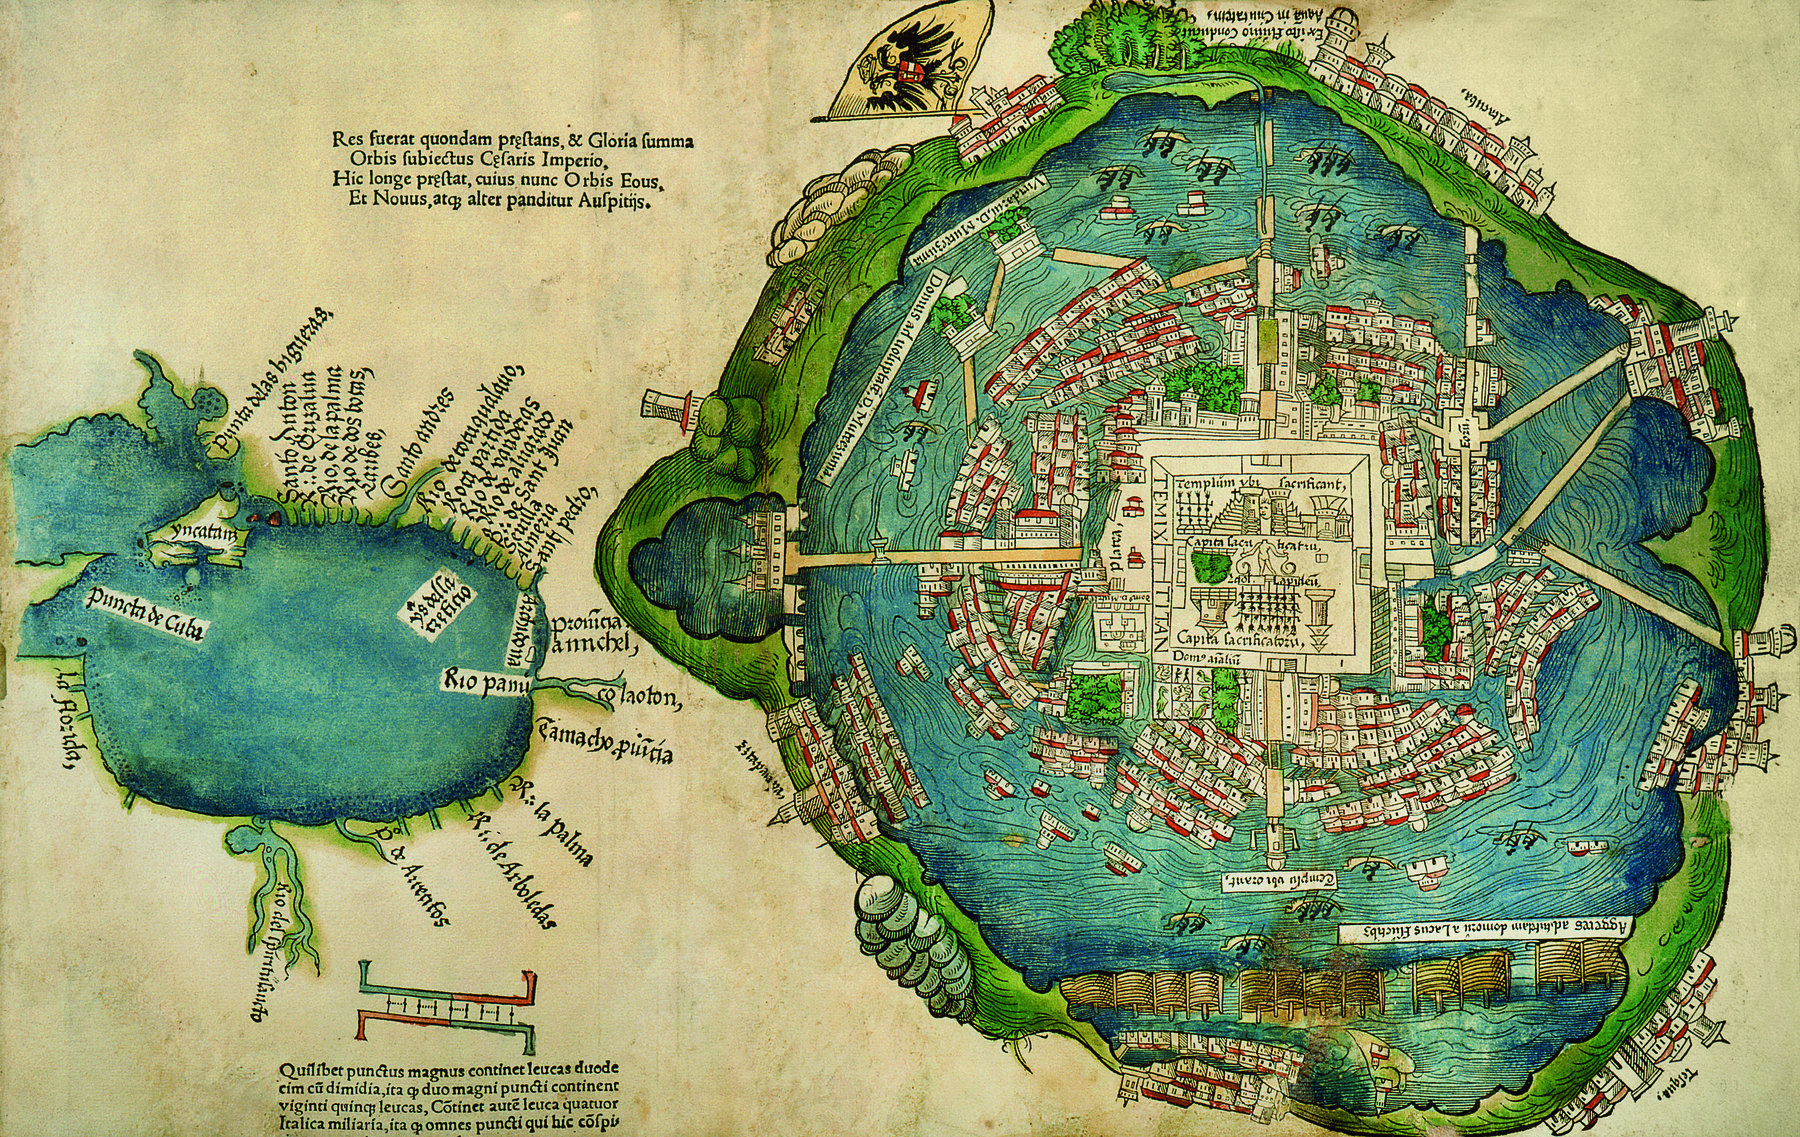 Ilustração. Mapa antigo representando uma cidade dentro de um lago com pontes ligando-a à terra. Às margens do lago, há muitas construções. Do lado esquerdo, há um lago menor com muitas inscrições ao redor.